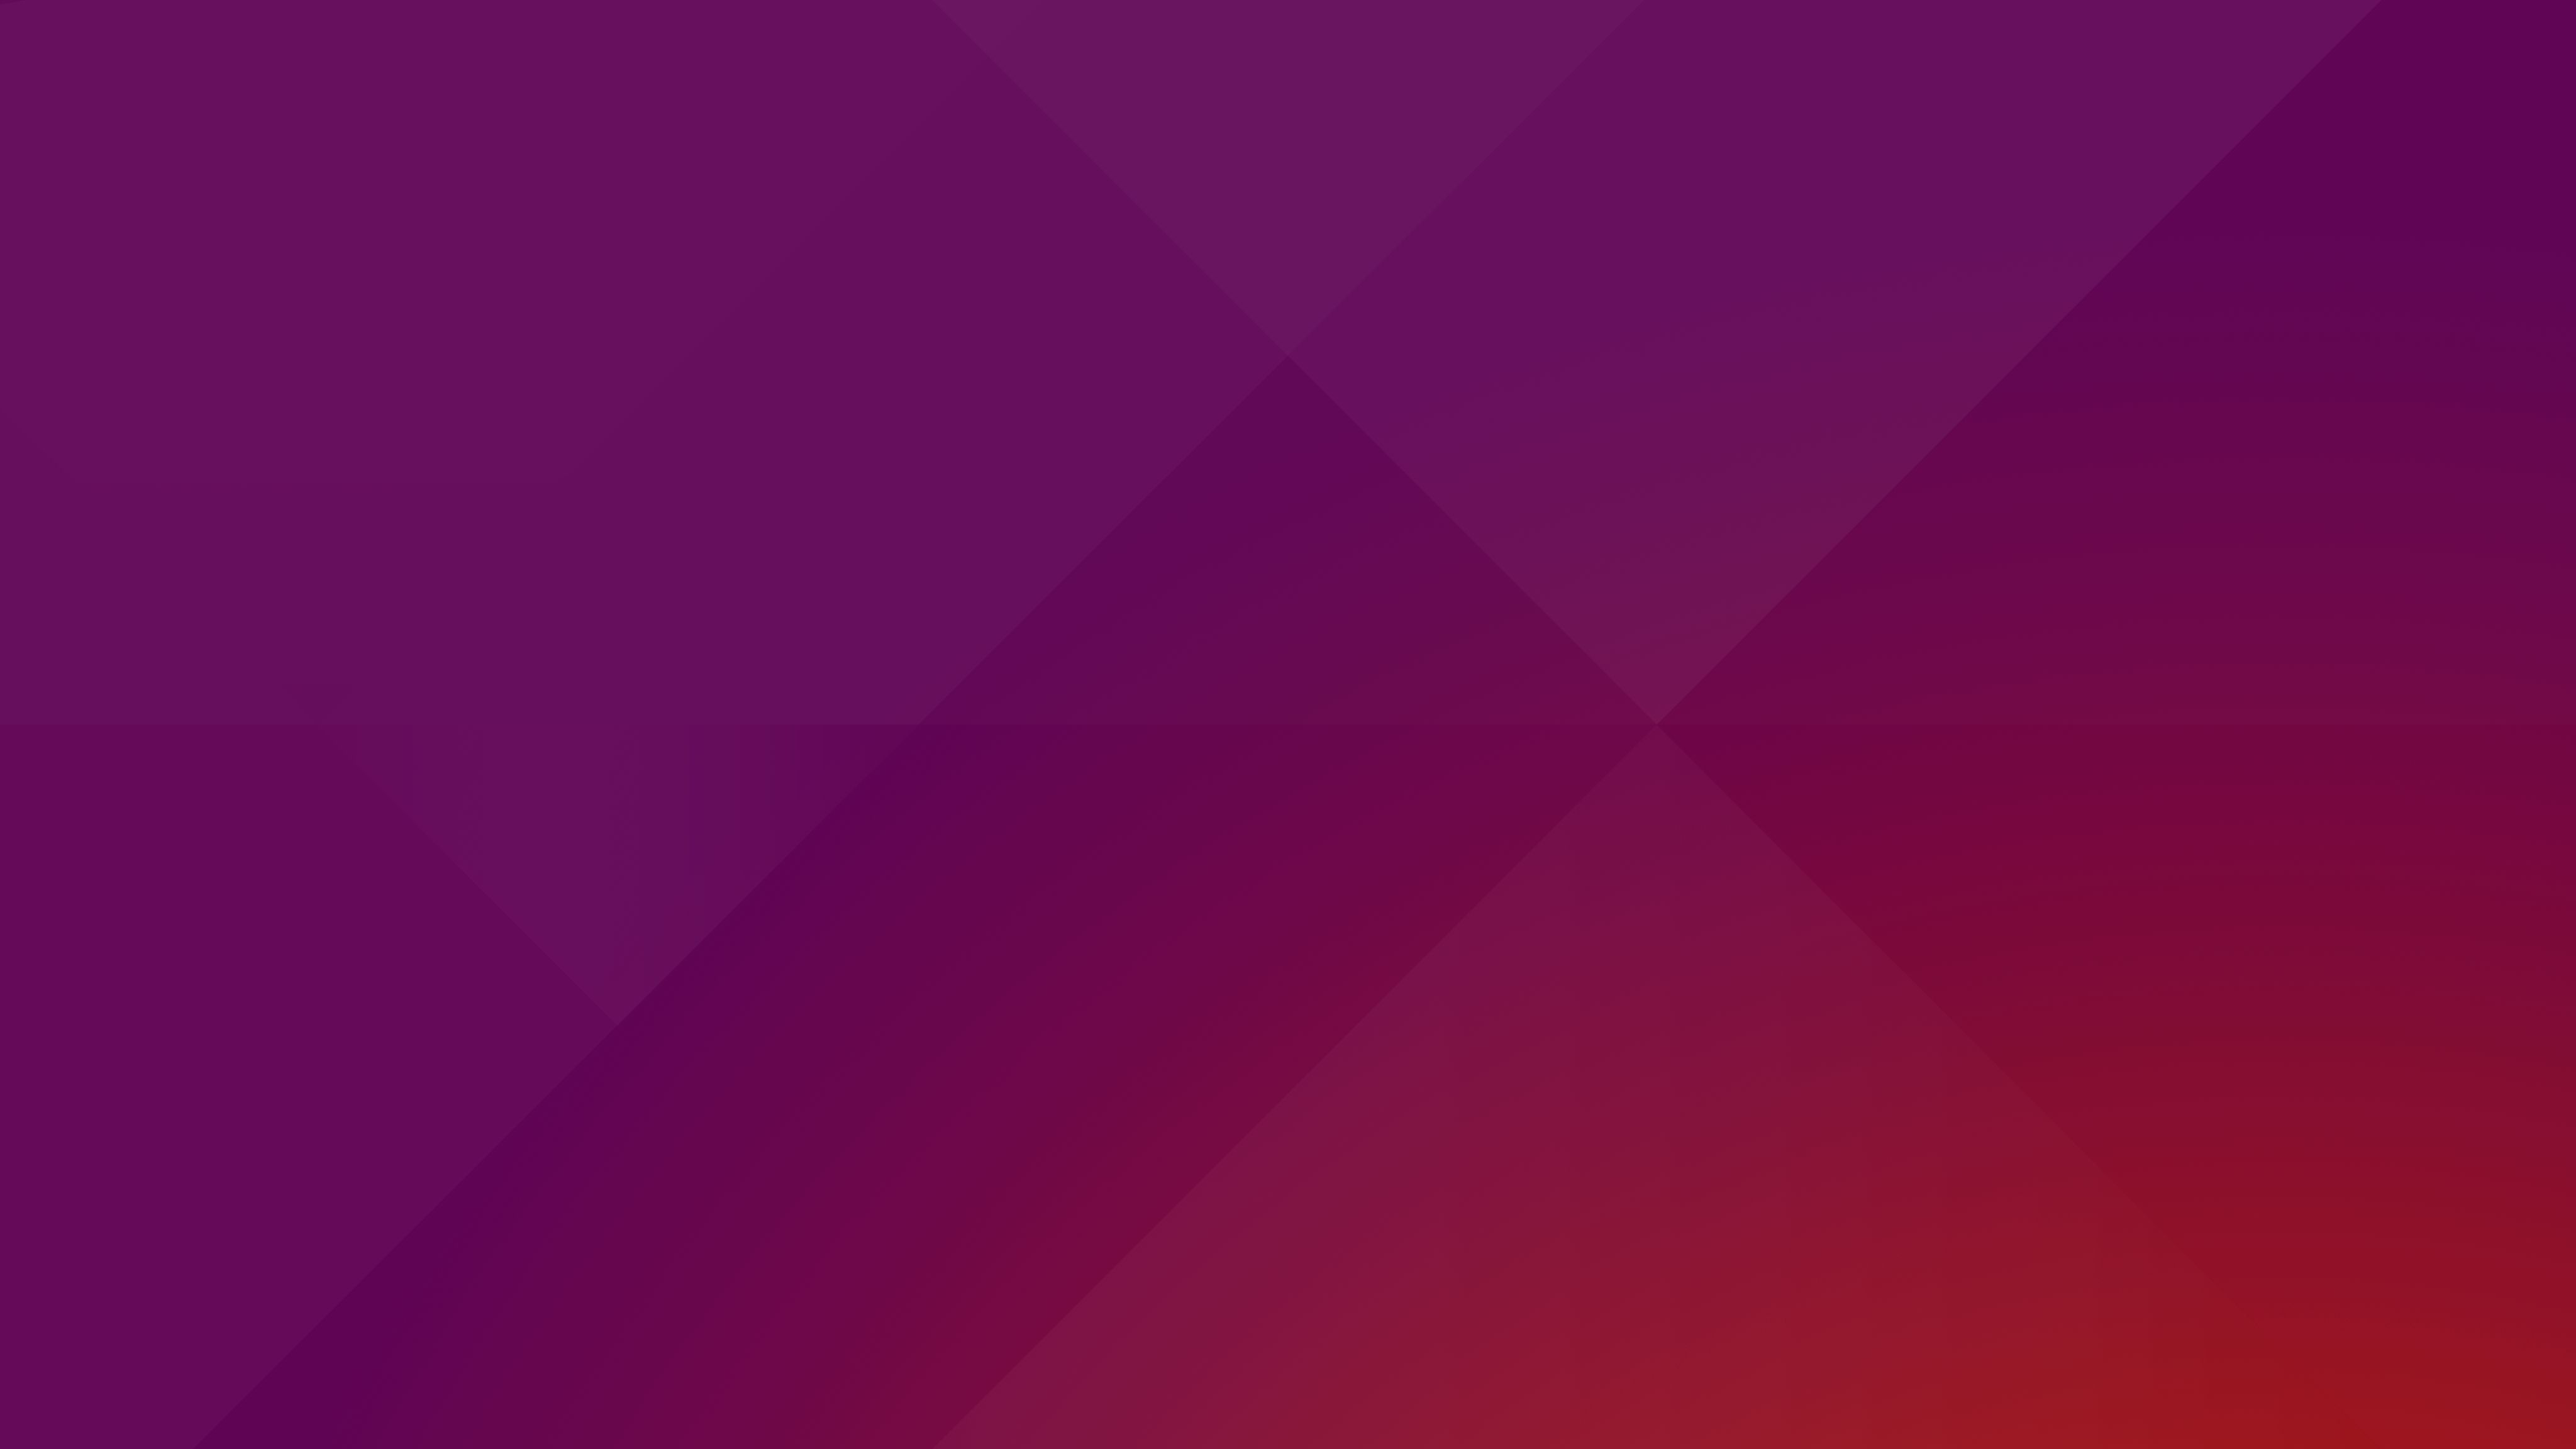 Cool Ubuntu 4K Wallpaper Free Cool Ubuntu 4K Background